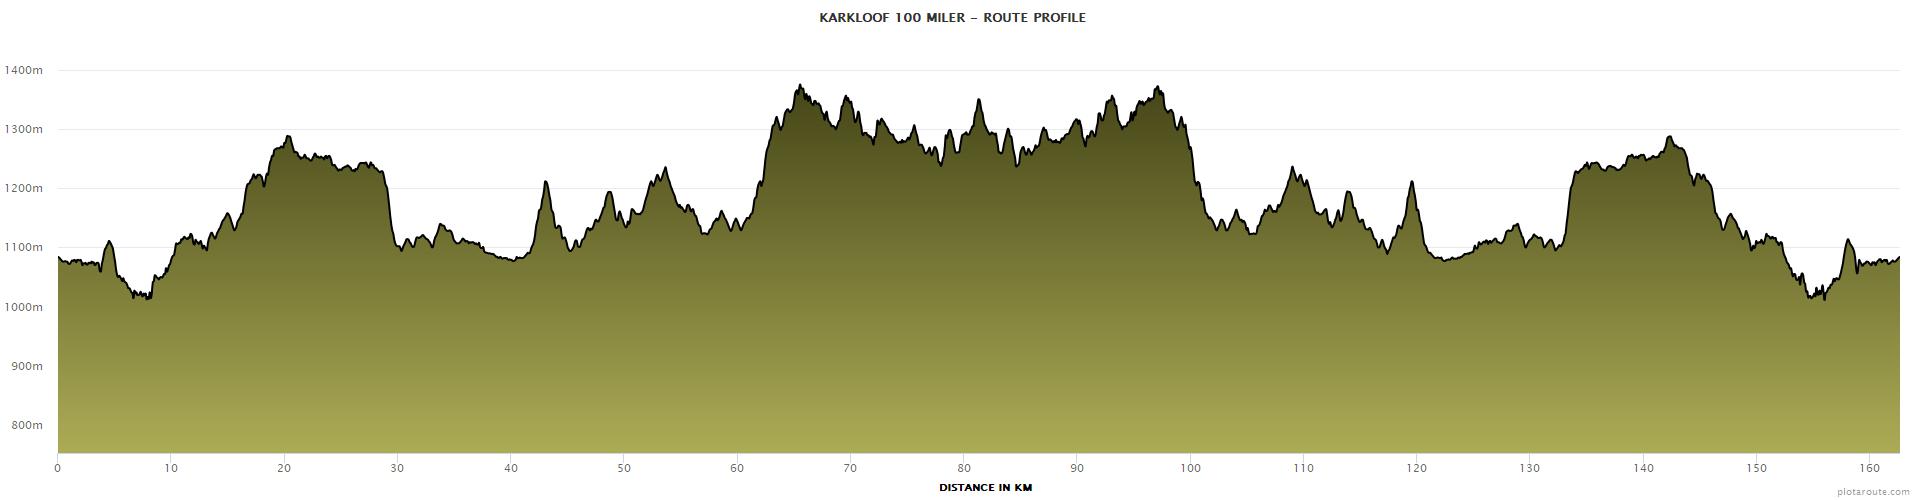 Karkloof 100 course profile 100 miler